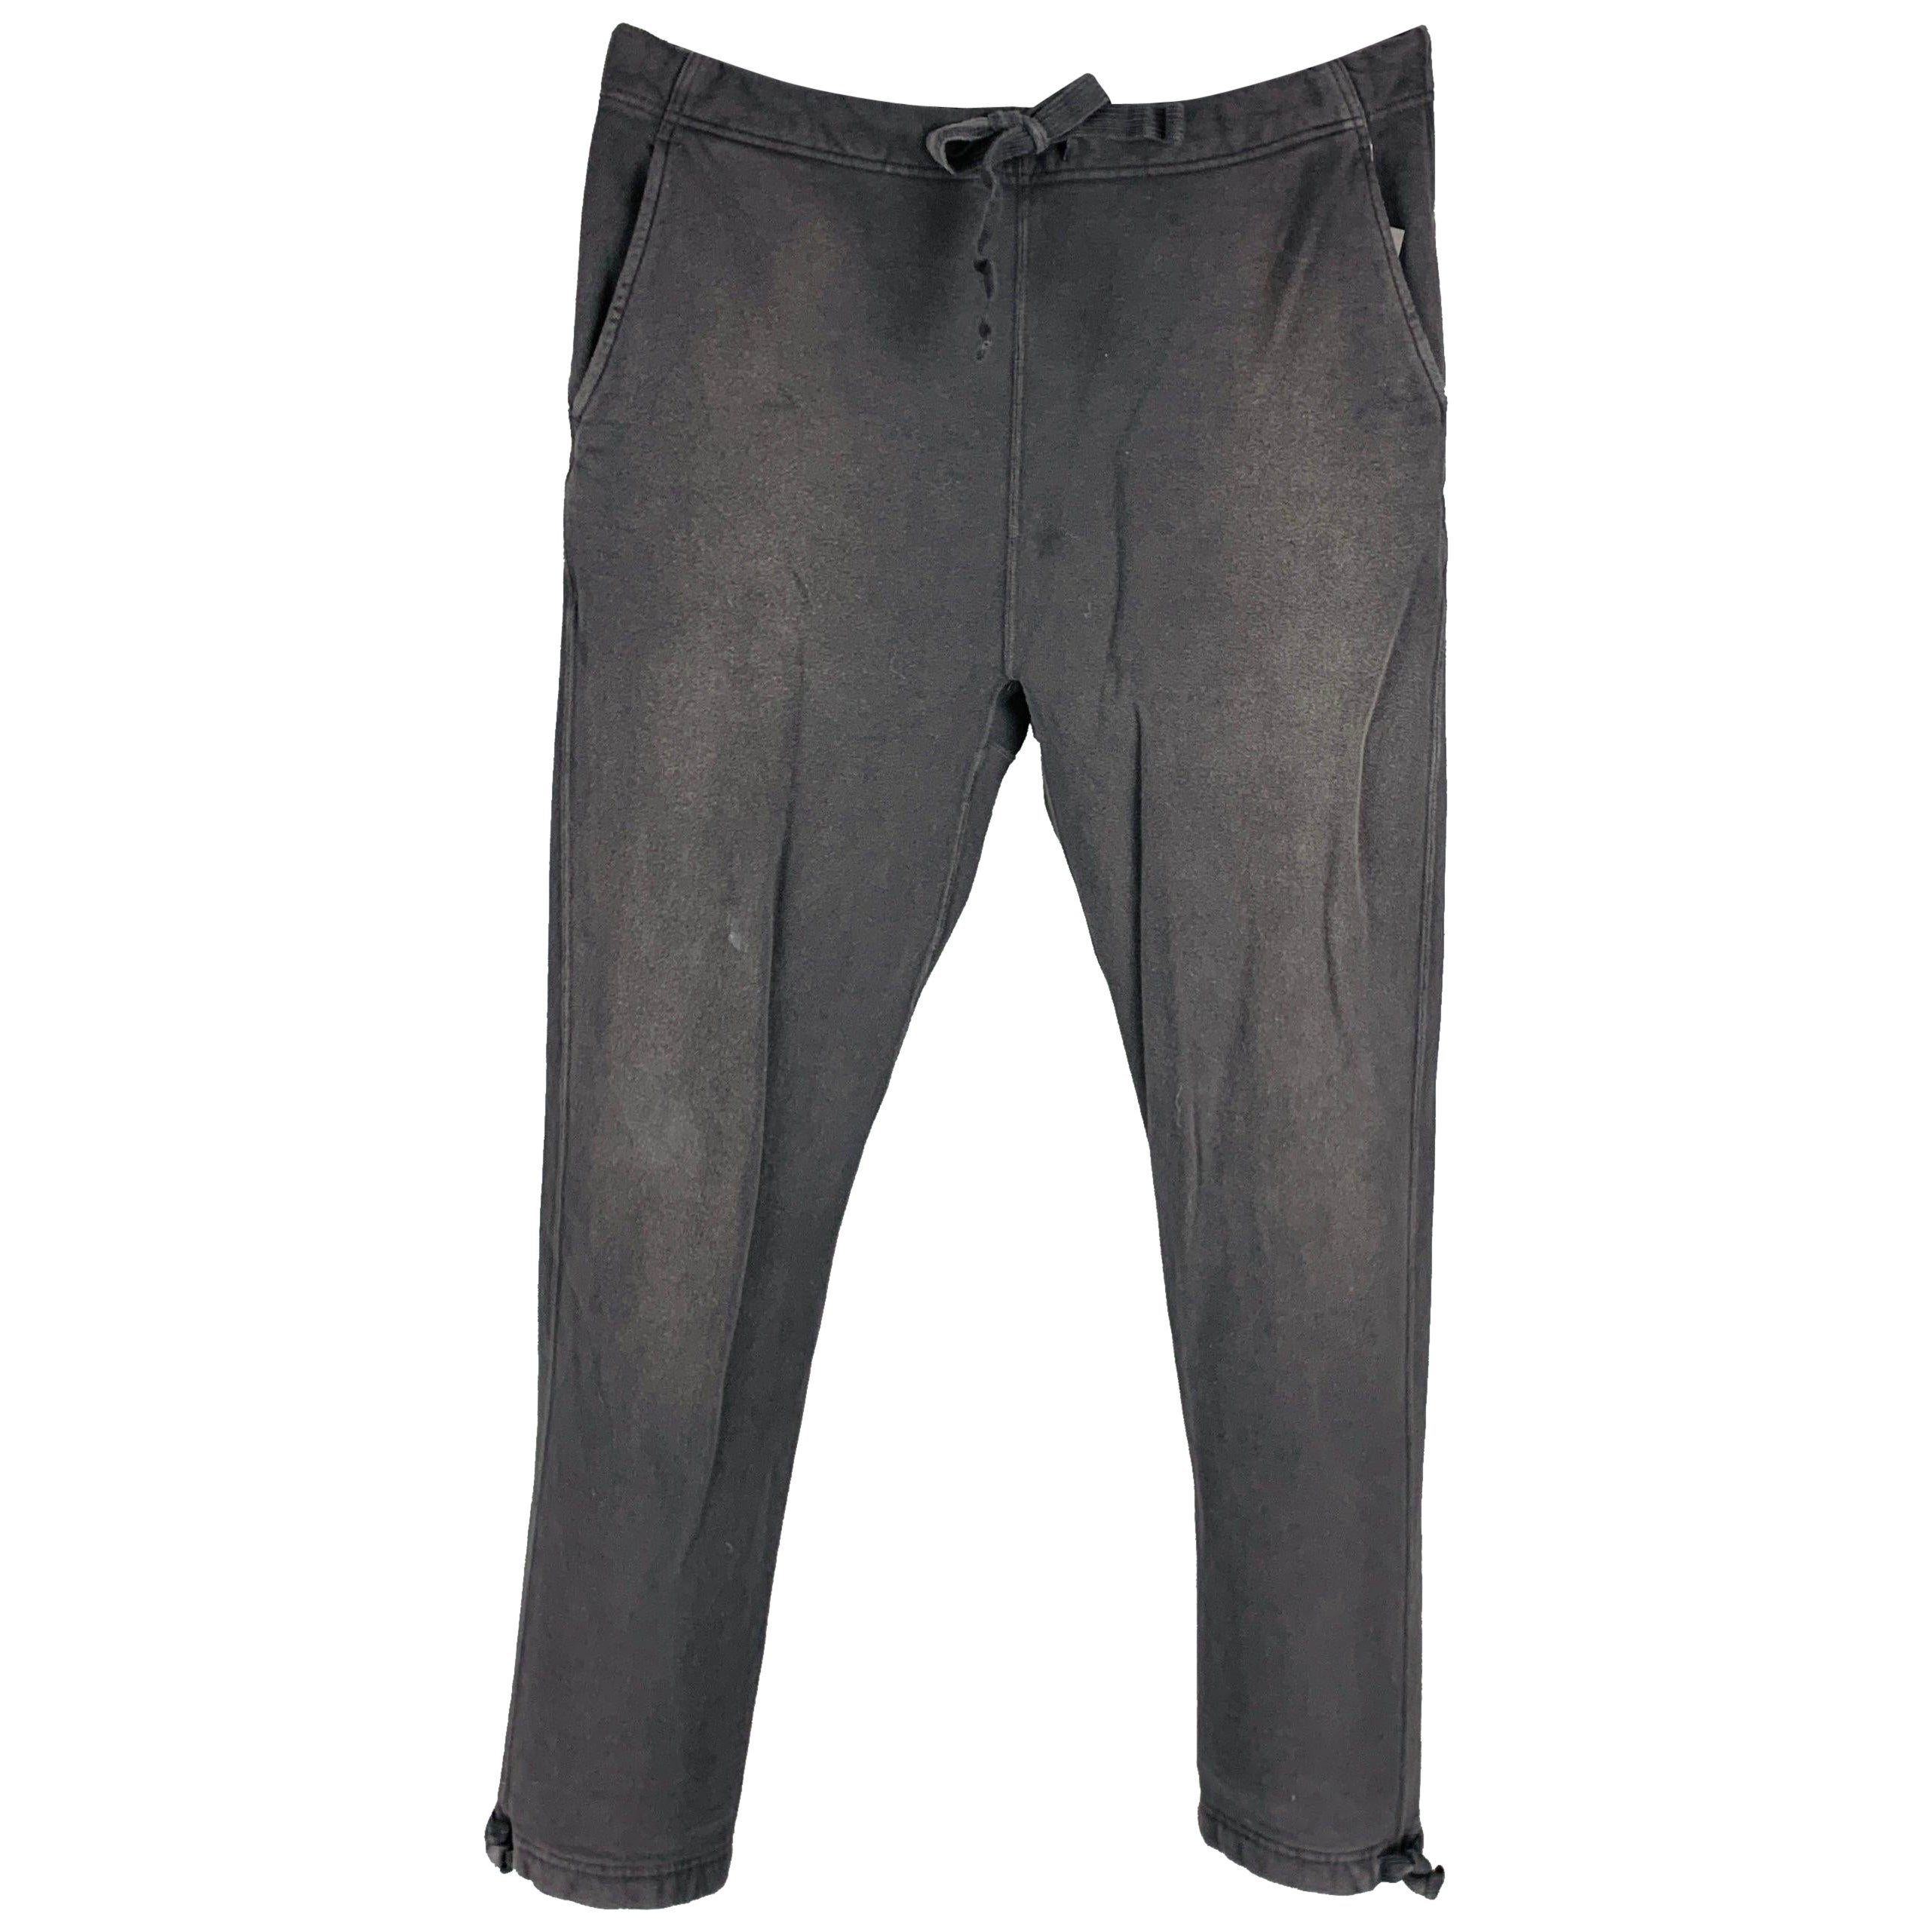 VISVIM -Sweat Pants DMGD- Size S Black Wash Cotton Drawstring Casual Pants en vente